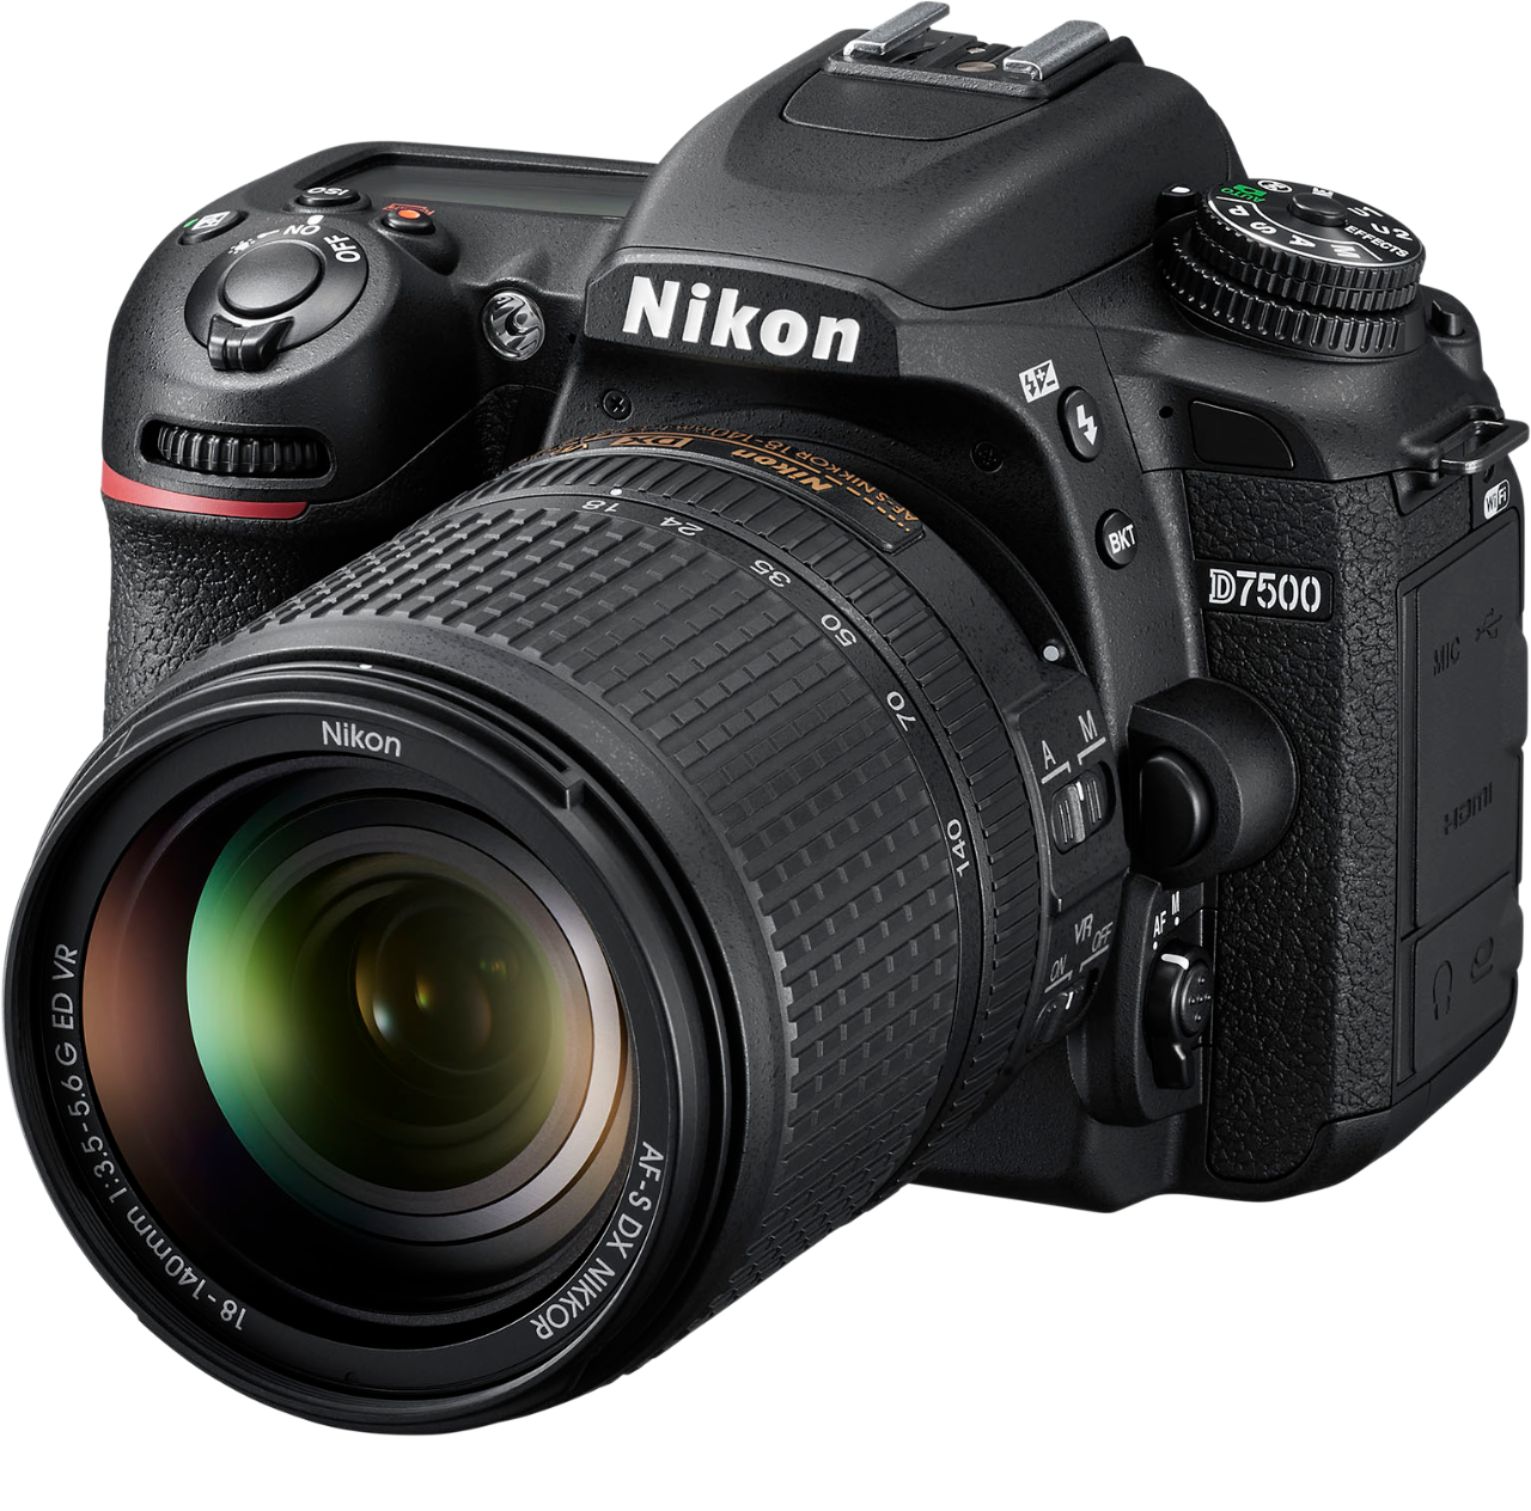 Left View: Nikon - D7500 DSLR 4K Video Camera with AF-S DX NIKKOR 18-140mm f/3.5-5.6G ED VR lens - Black